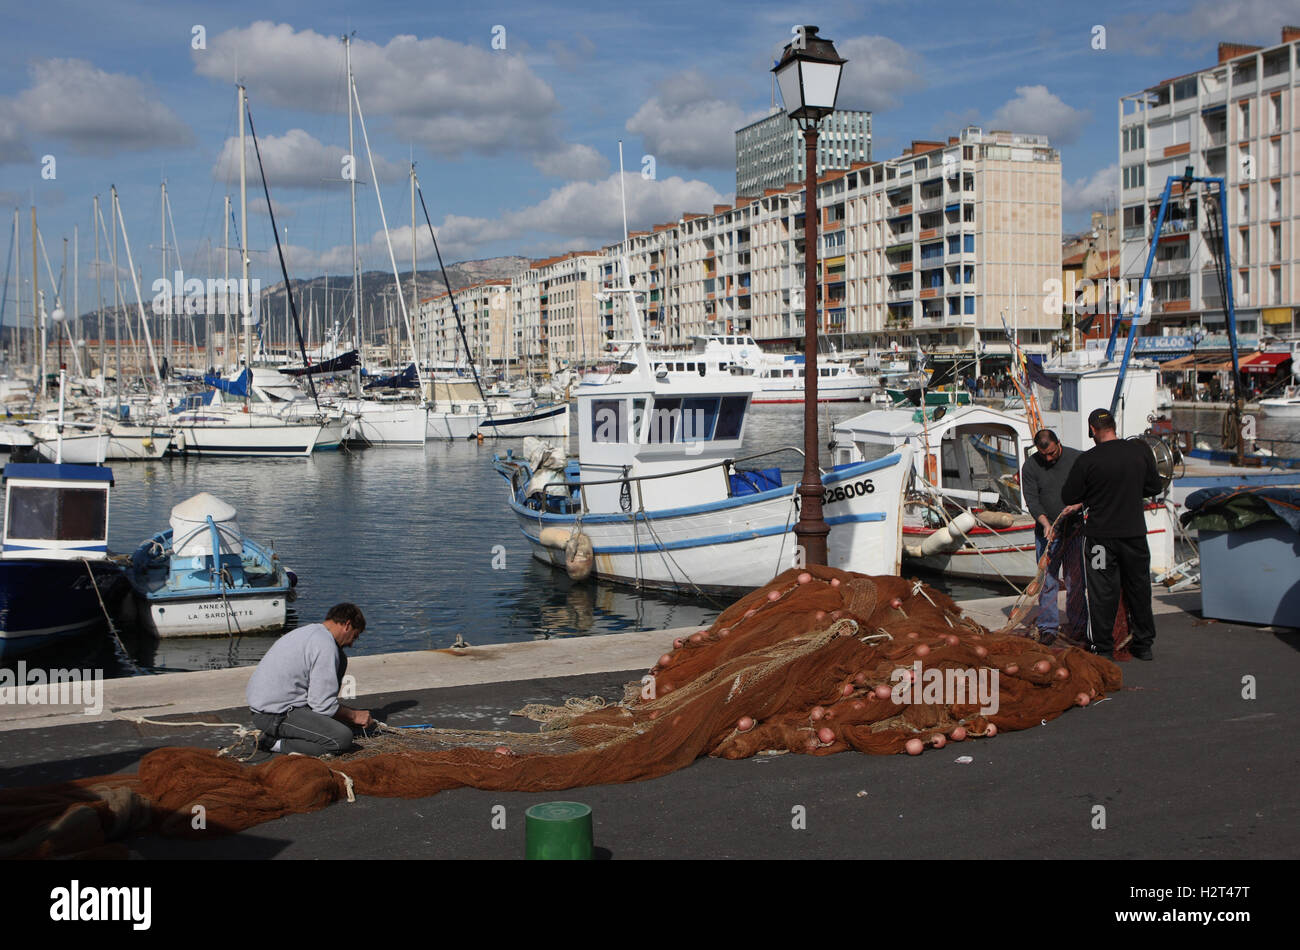 Les pêcheurs réparer leurs filets sur le quai Minerve au port de Toulon, Var, Cote d'Azur, France, Europe Banque D'Images